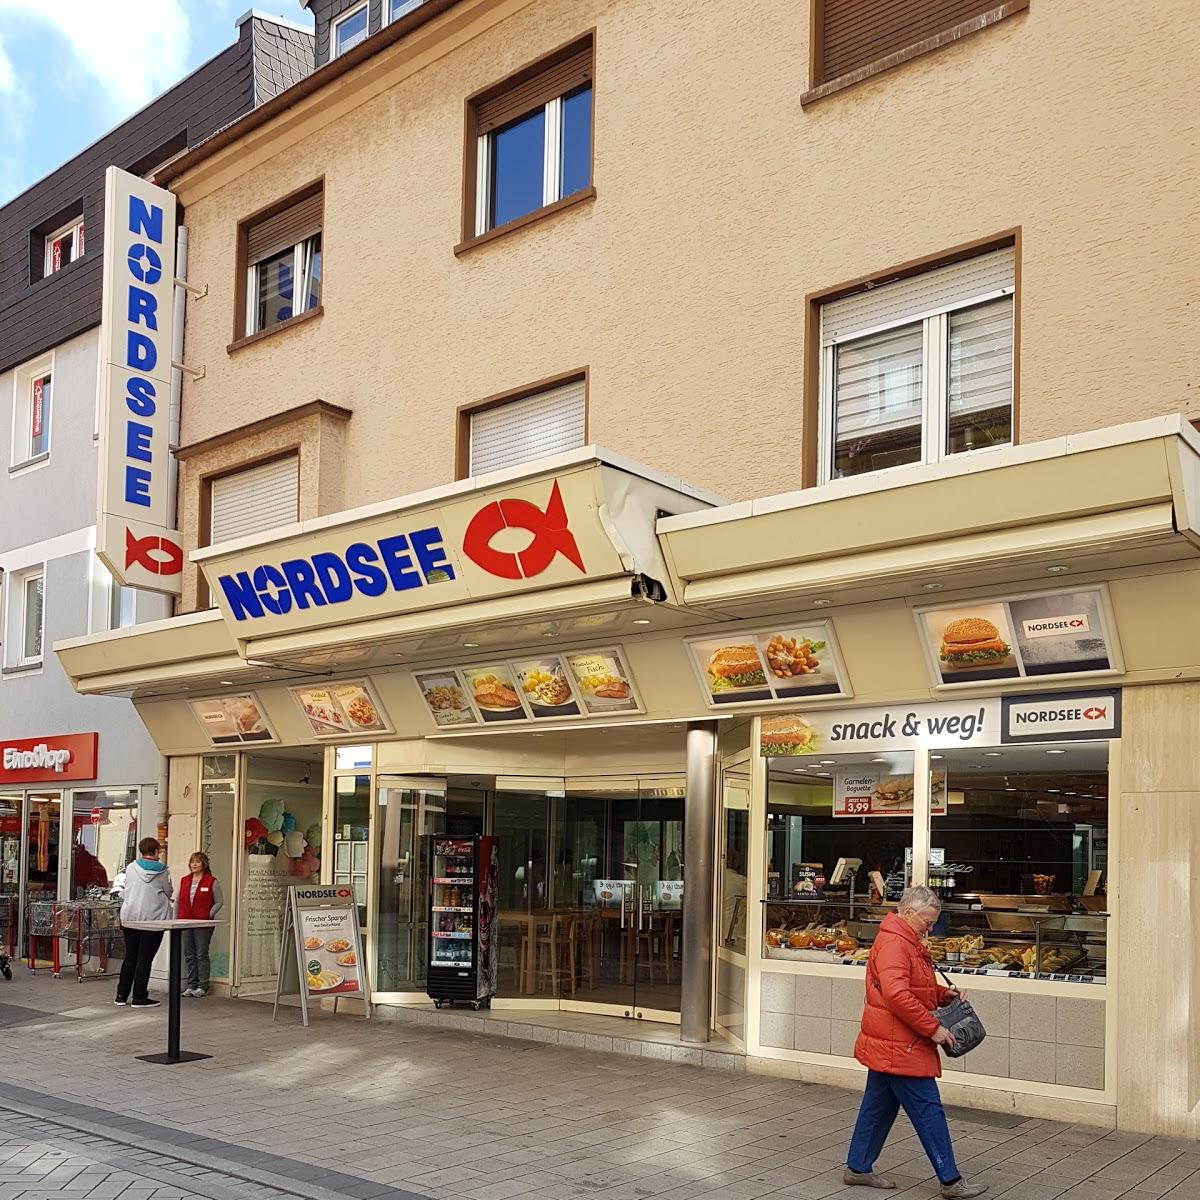 Restaurant "NORDSEE  Fahrstraße" in Hanau